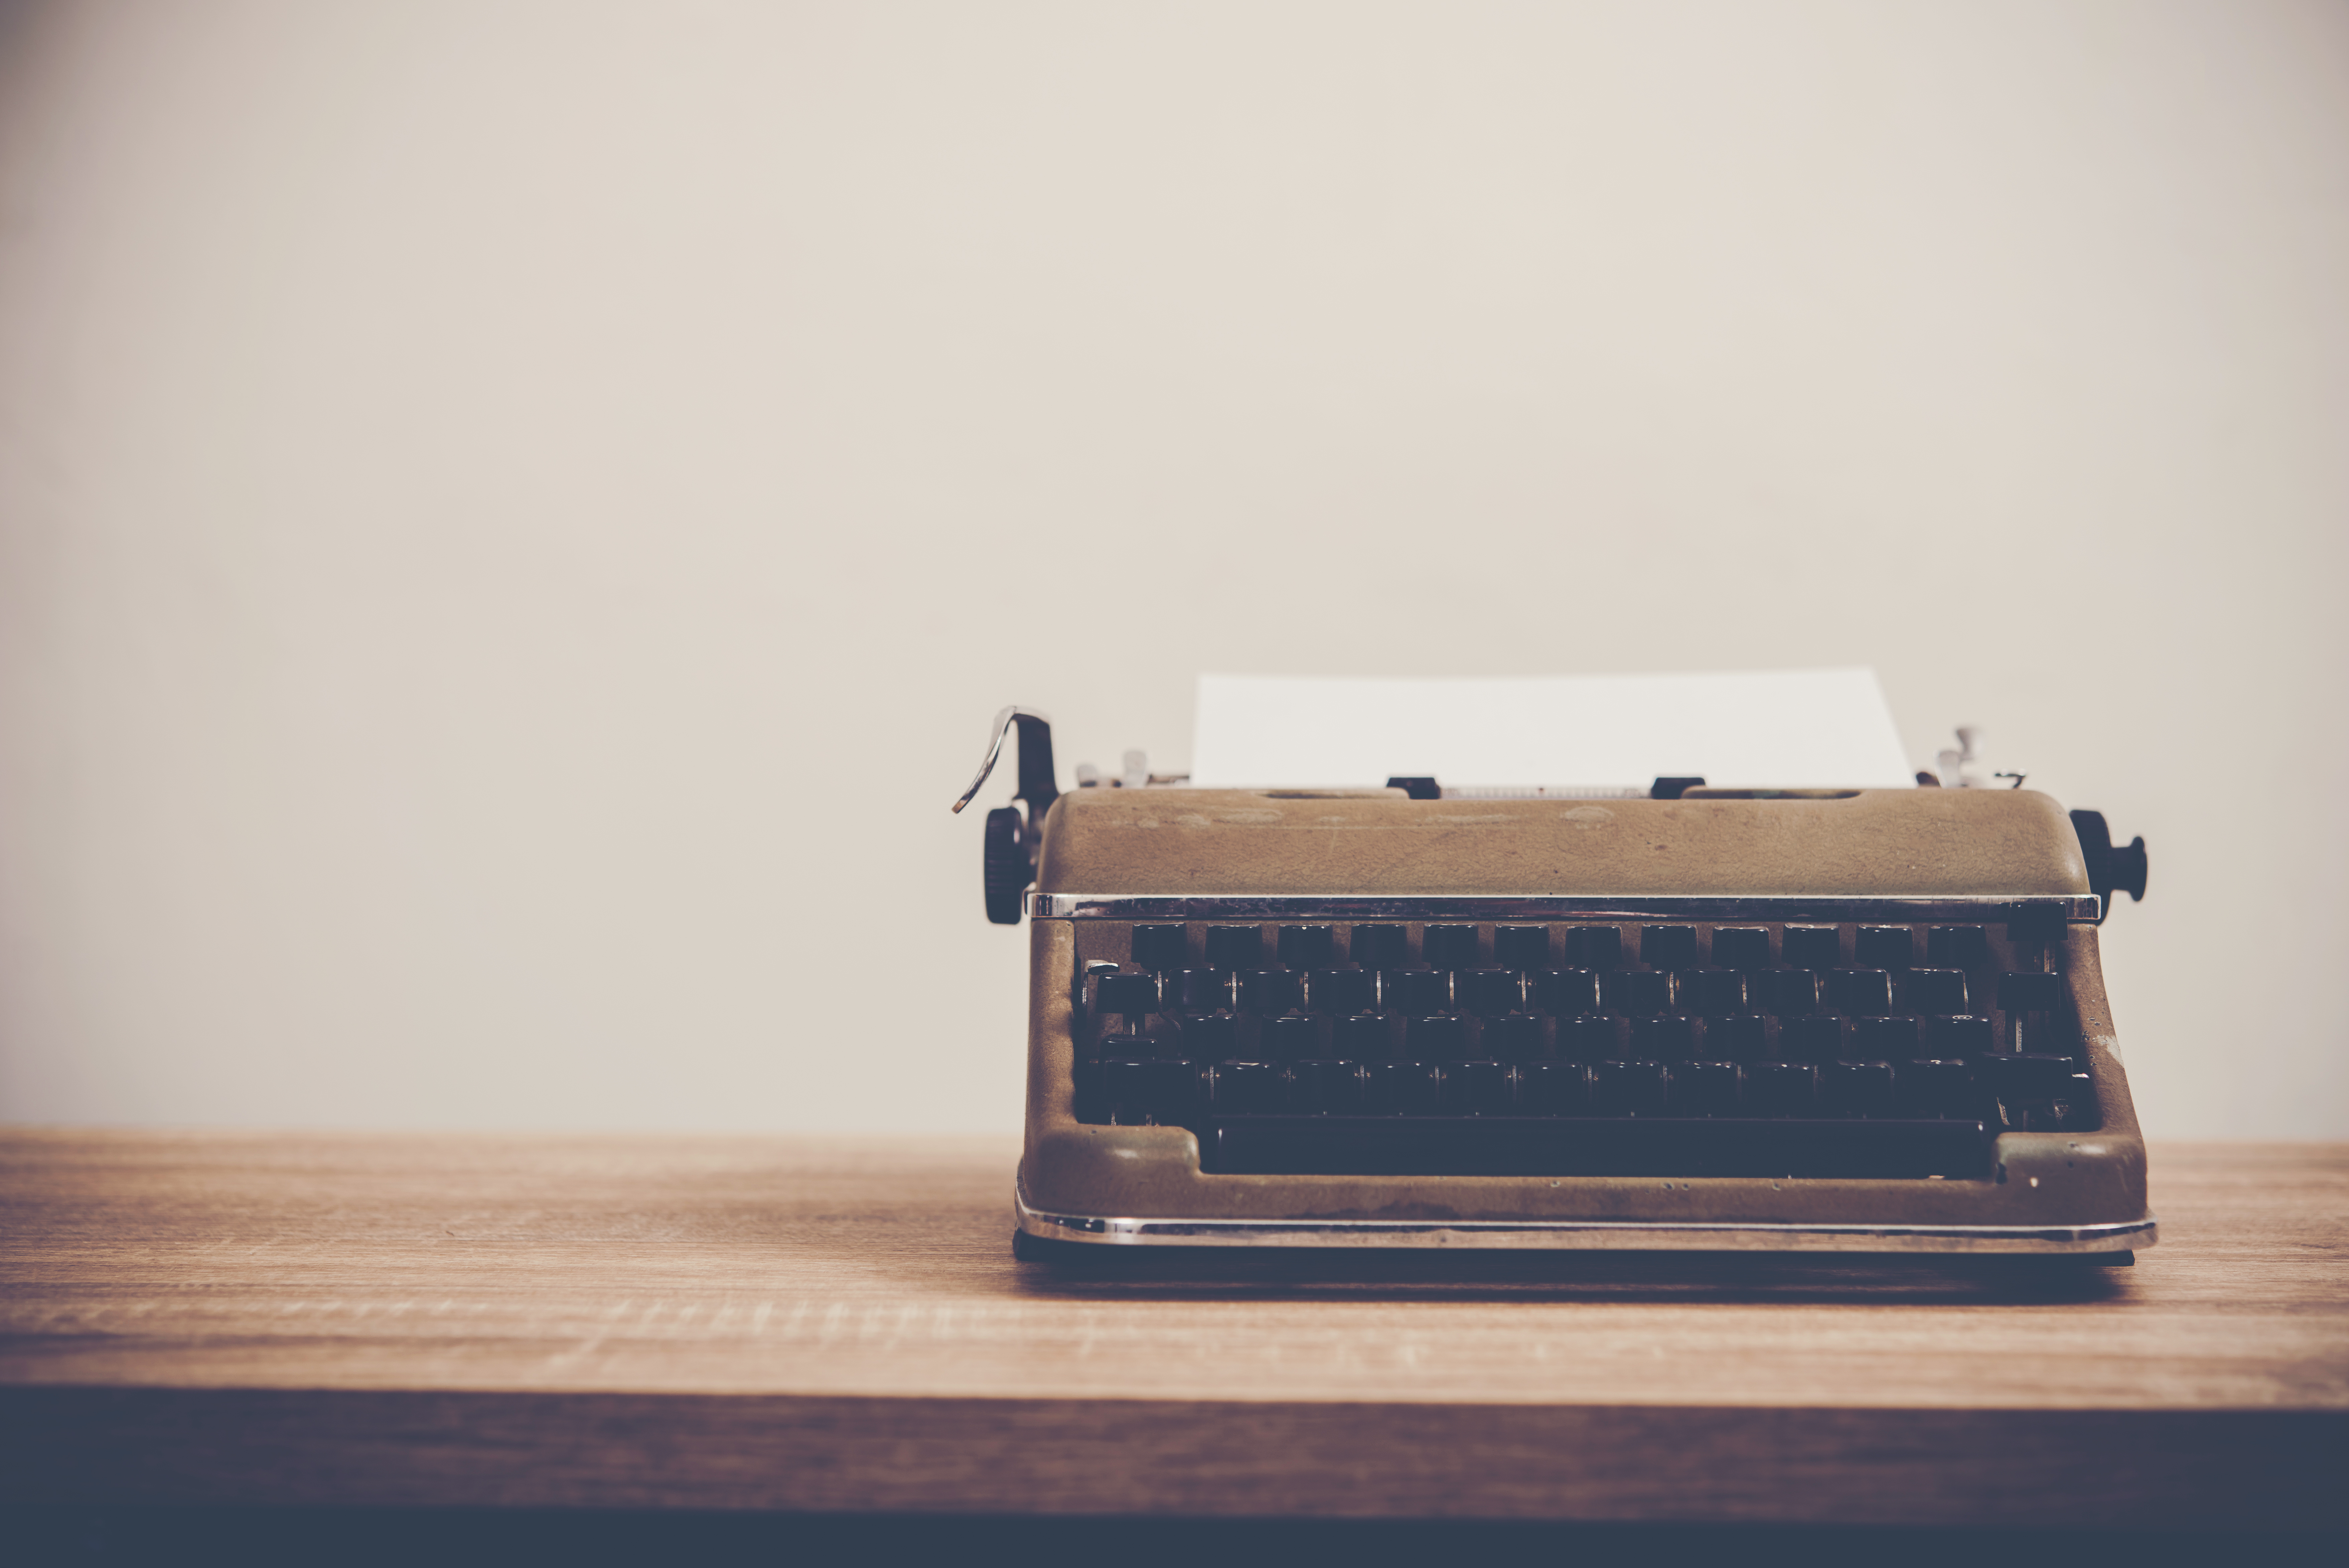 Typewriter on a wooden desk.